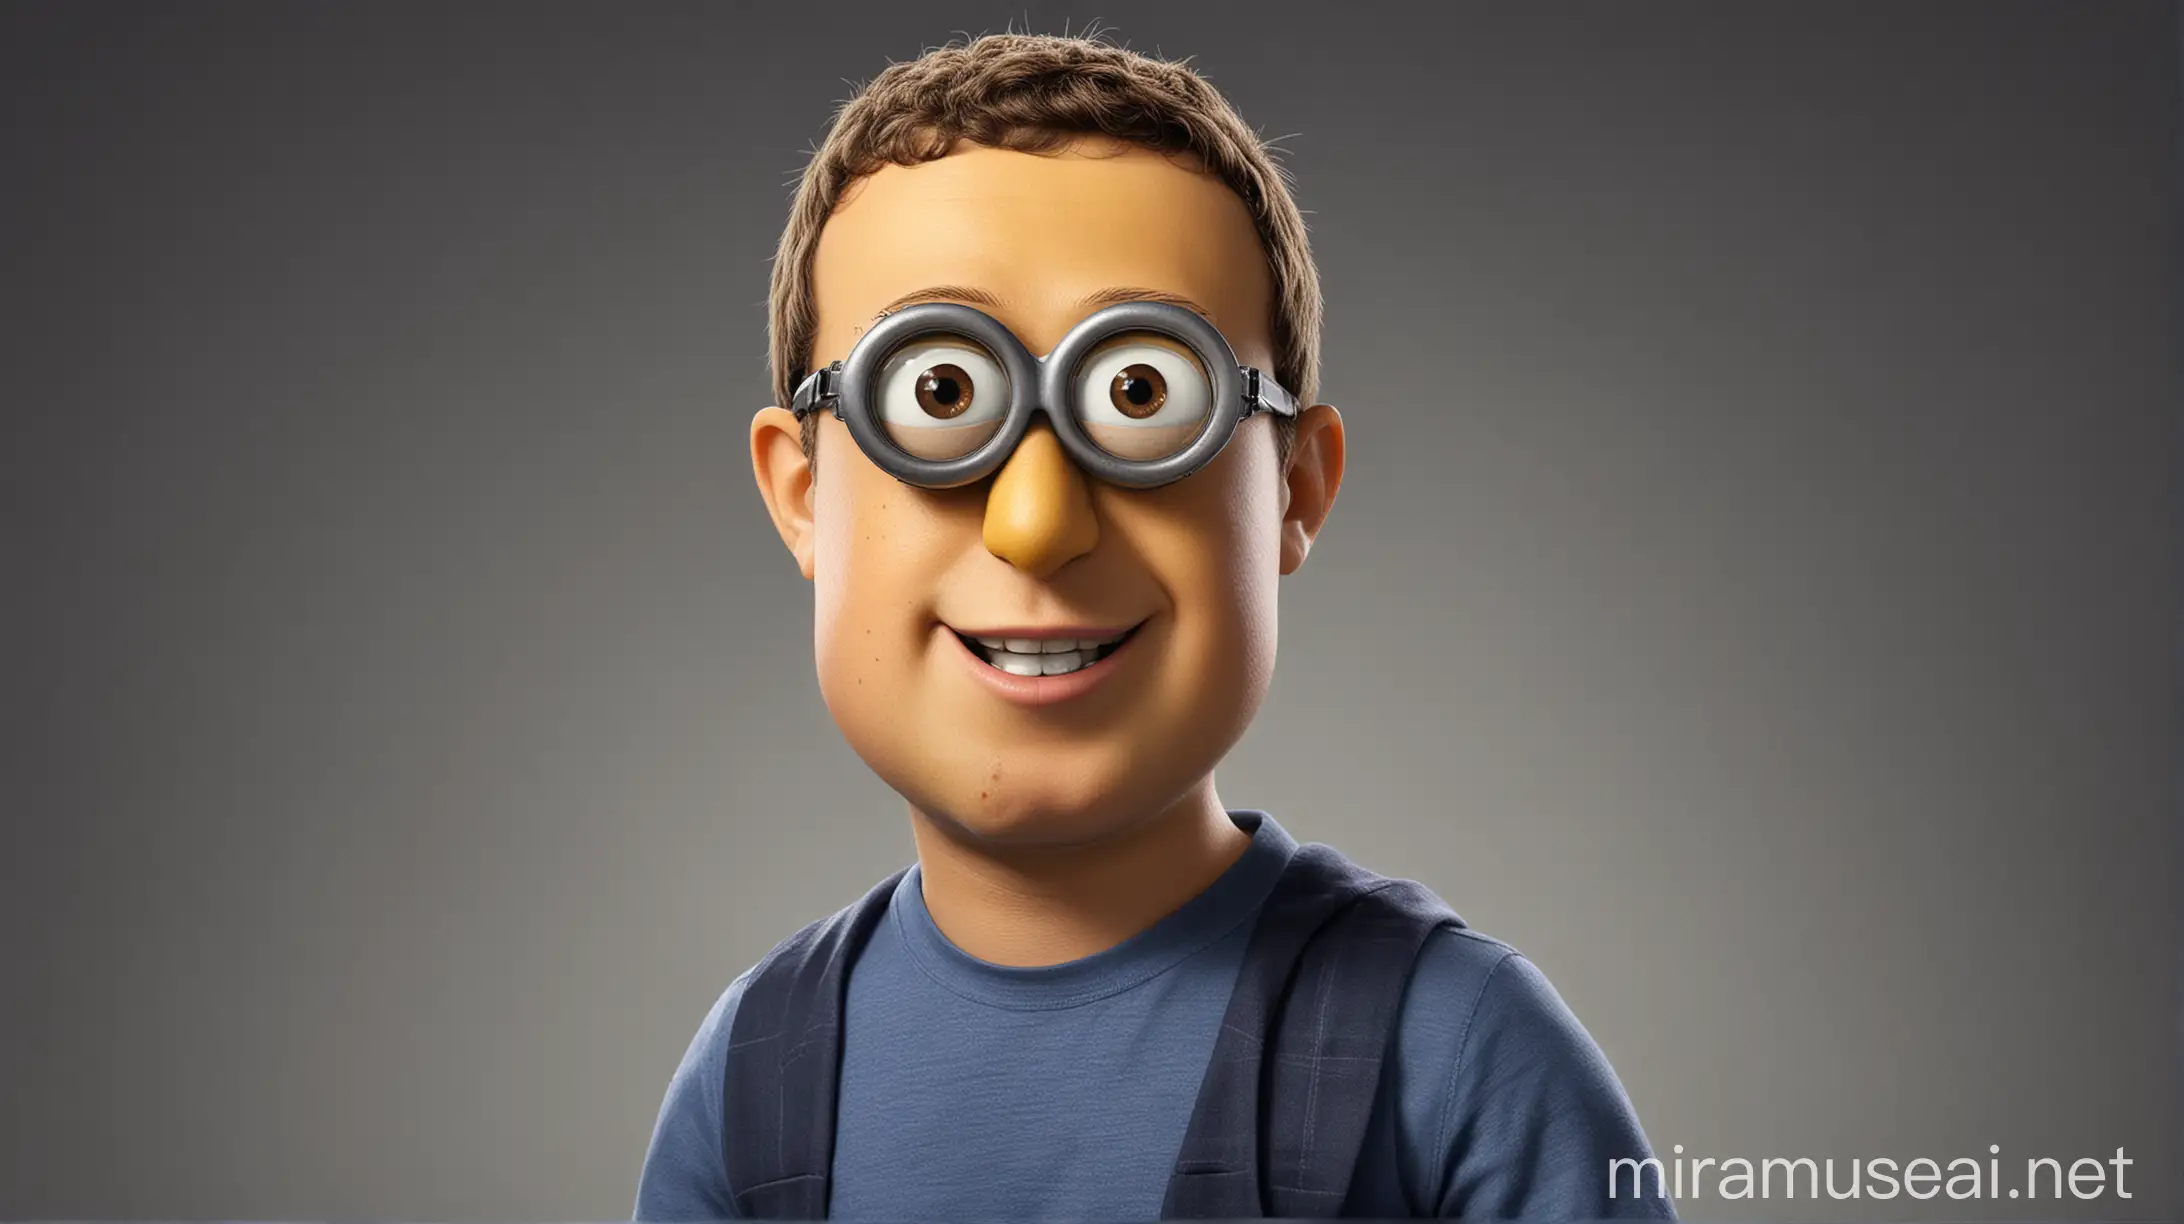 Mark Zuckerberg American Businessman Transforms into a Minion